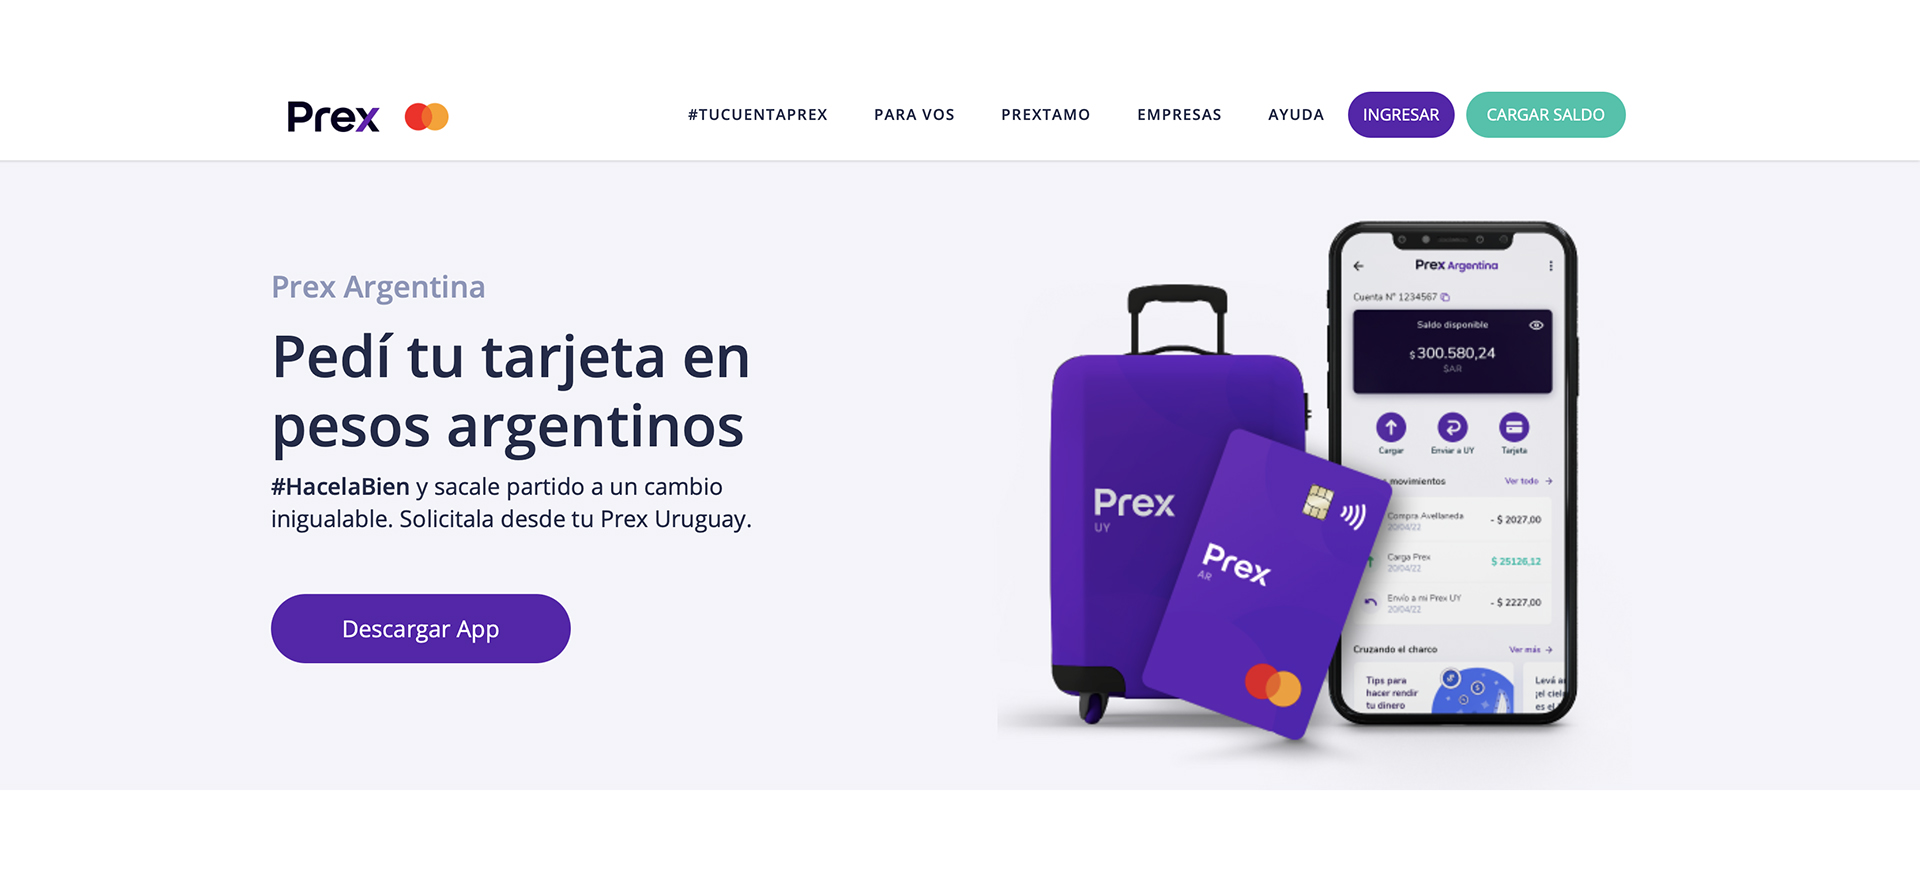 Así promociona Prex en Uruguay su tarjeta prepaga para Argentina